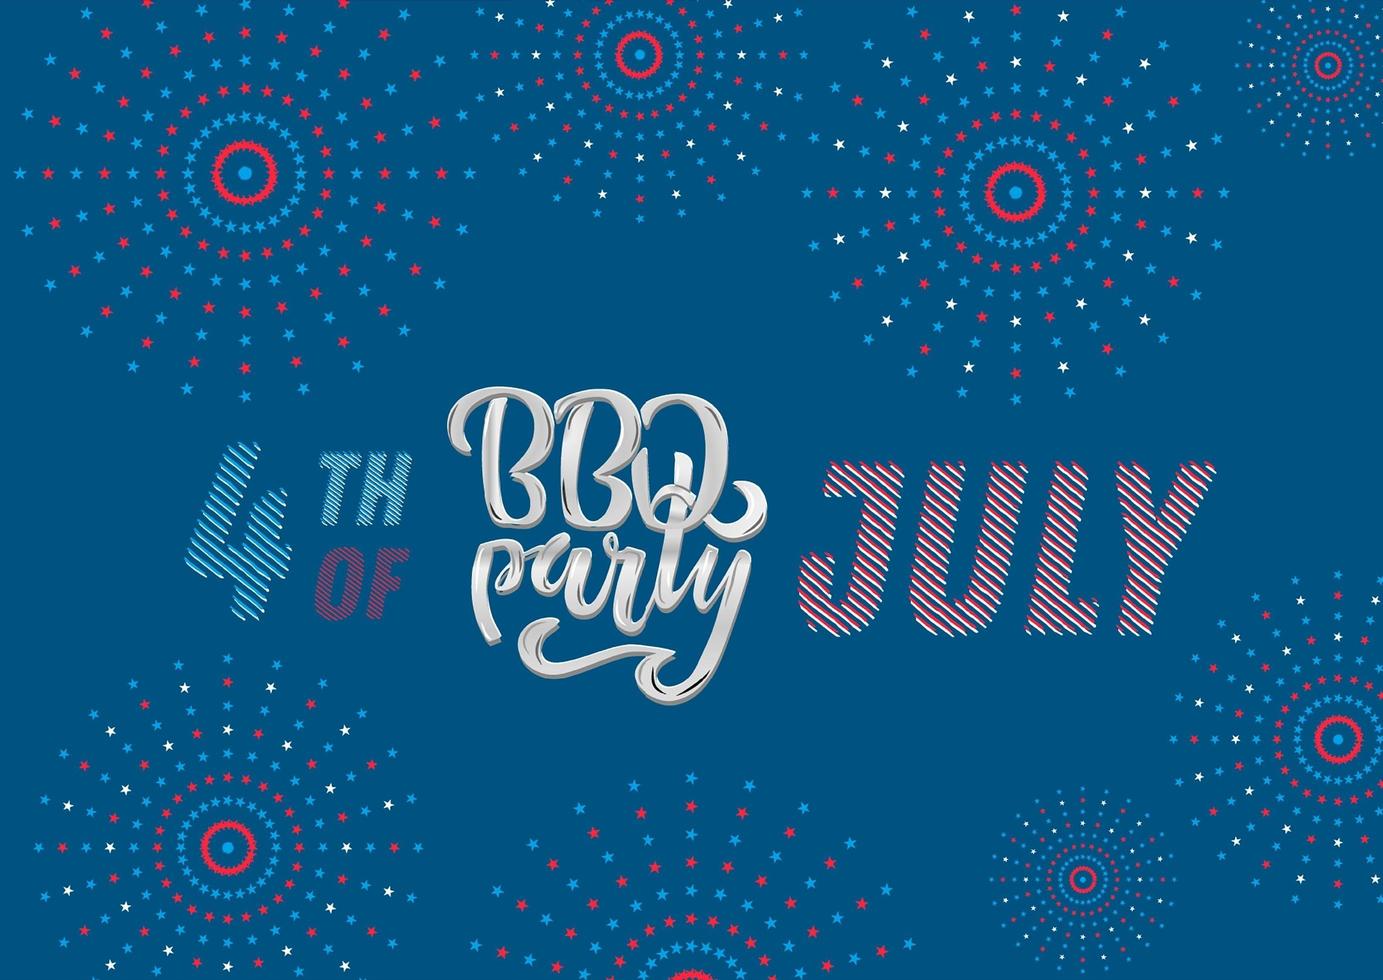 4 luglio bbq party lettering invito al barbecue del giorno dell'indipendenza americana con decorazioni del 4 luglio stelle, bandiere, fuochi d'artificio su sfondo blu. illustrazione disegnata a mano di vettore. vettore